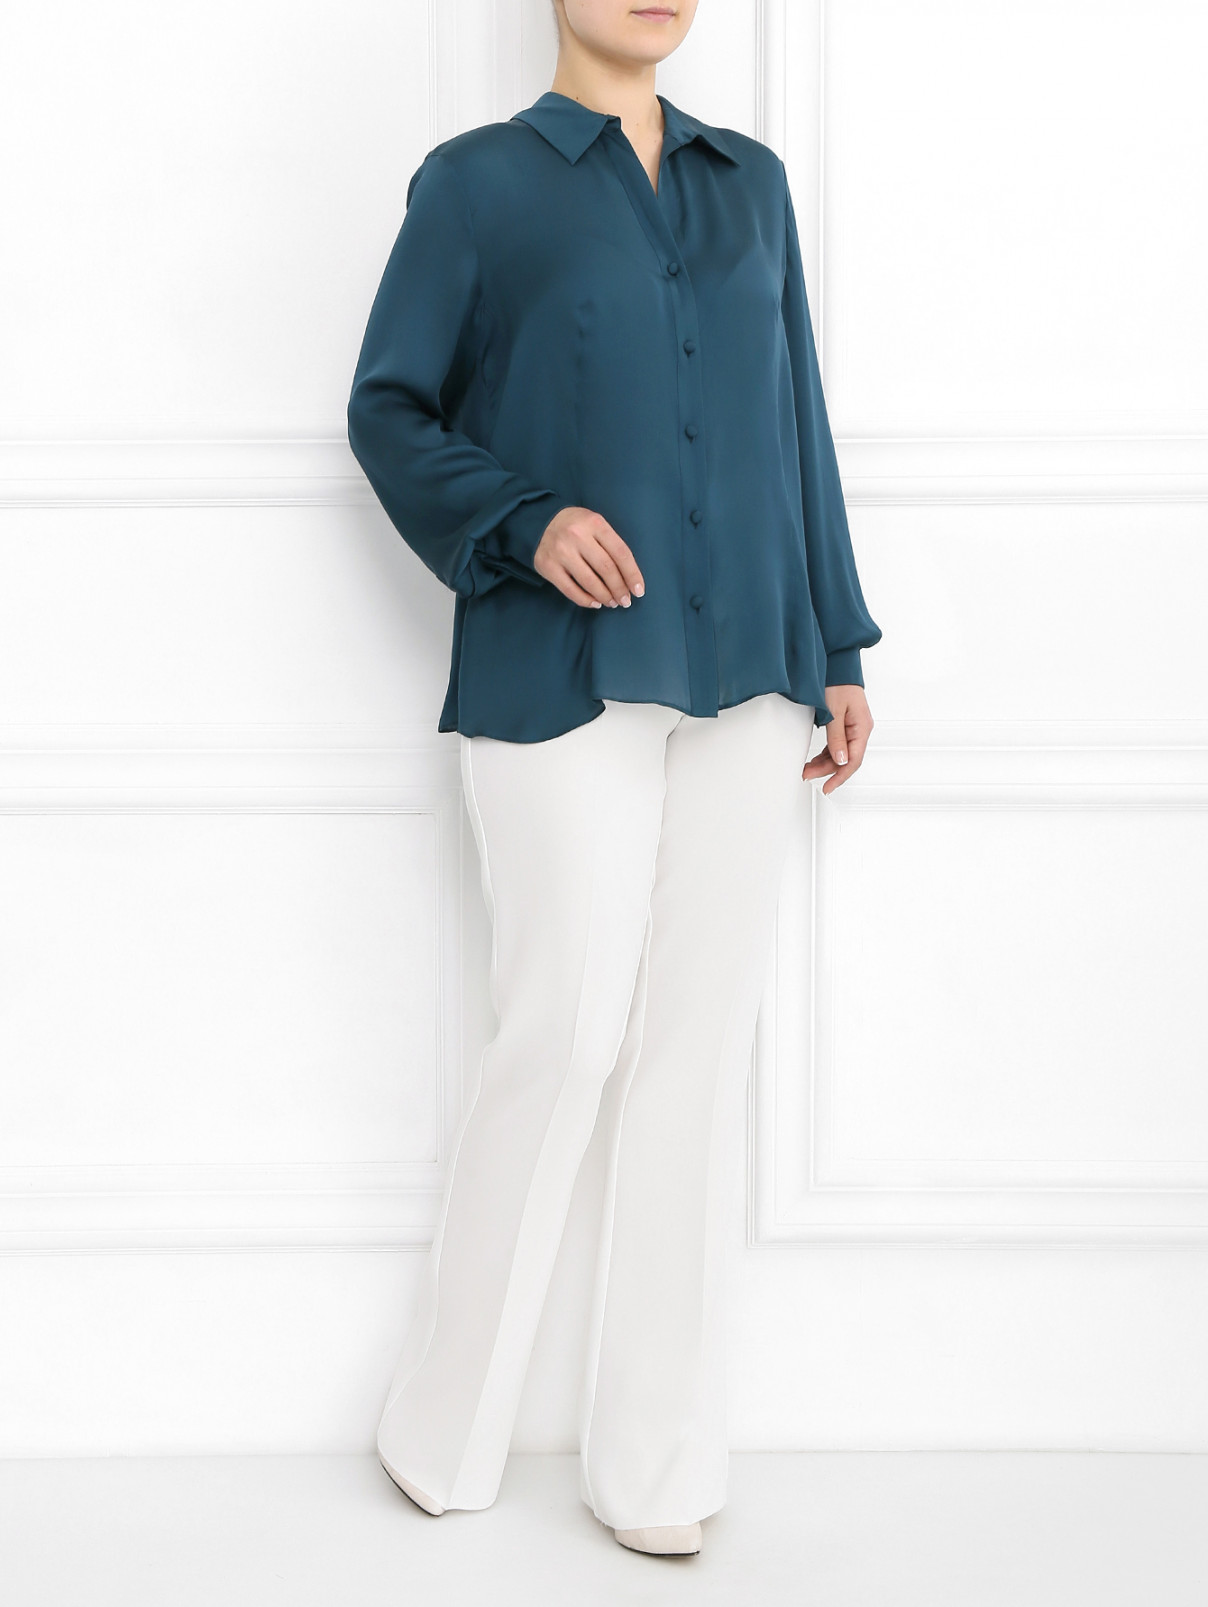 Блуза из шелка асимметричного кроя с отделкой из кружева Marina Rinaldi  –  Модель Общий вид  – Цвет:  Зеленый